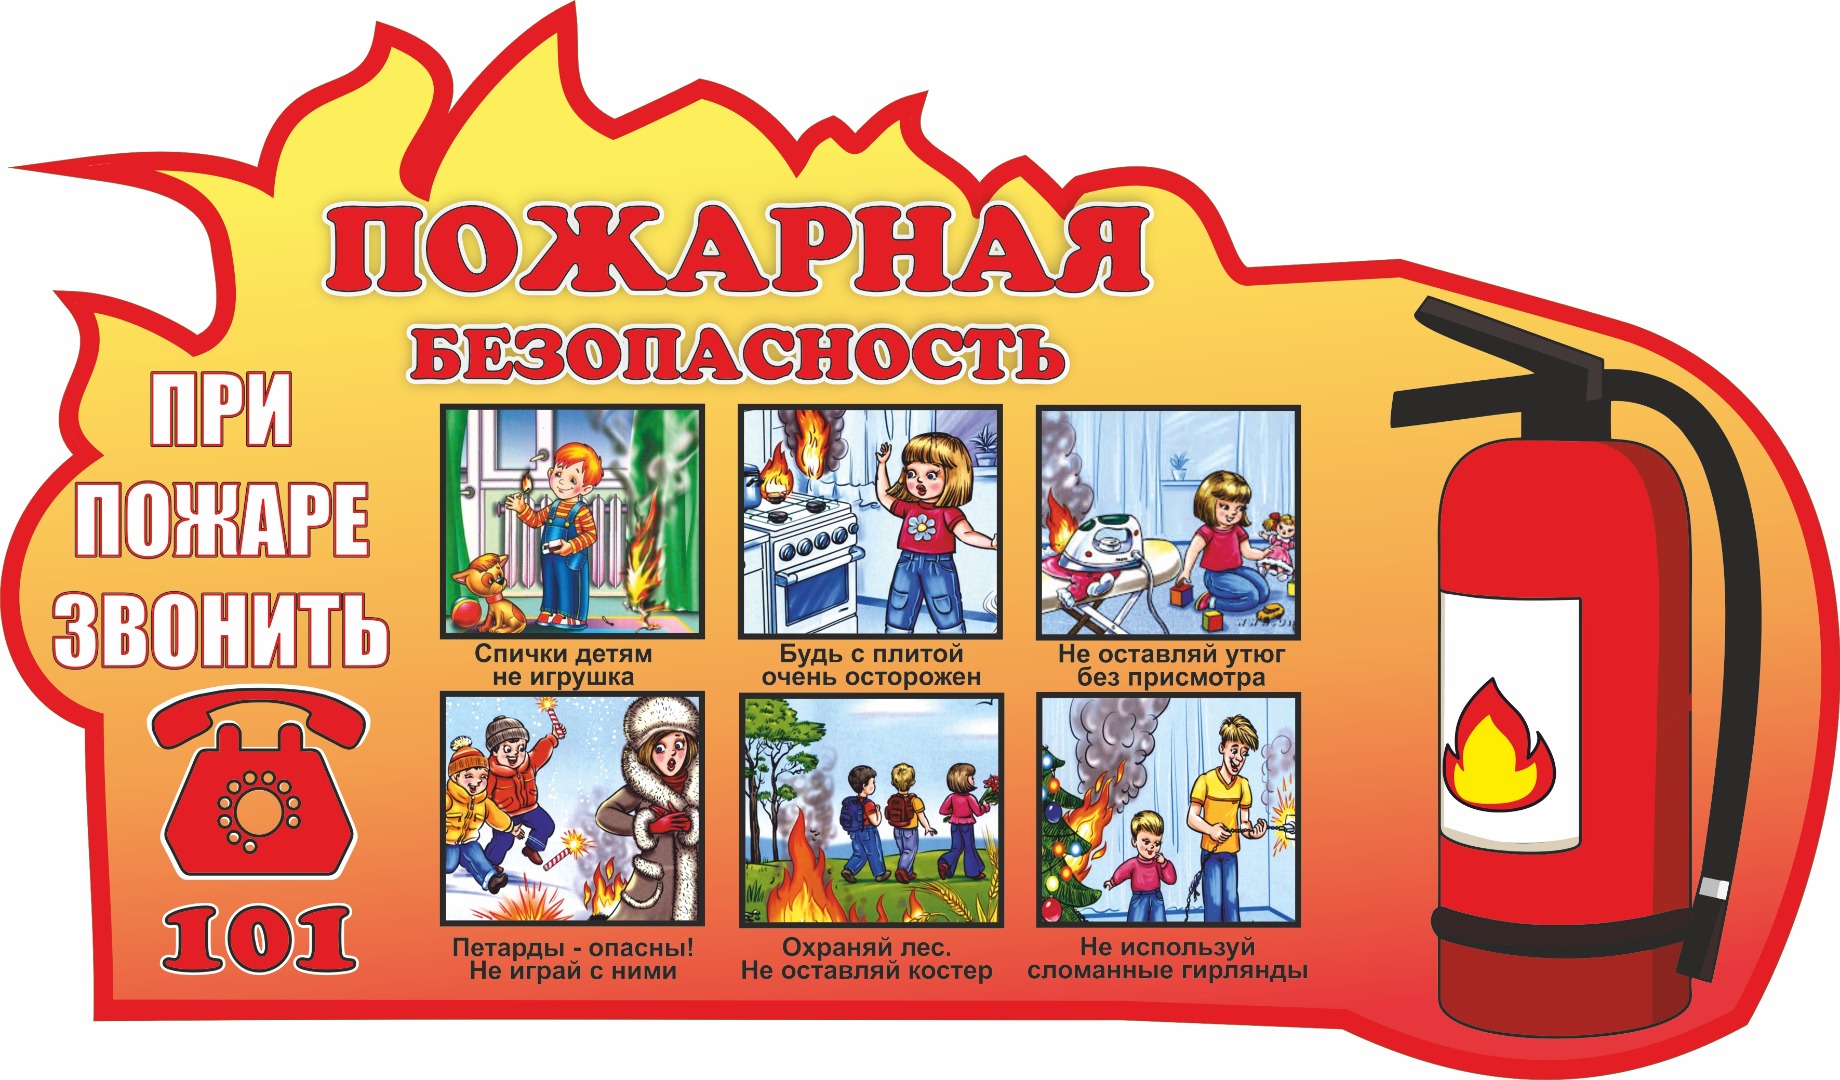 Тема недели пожарная безопасность. Пожар няябезопасноссть. Пожарная безопастность. Пожарная безопасность для детей.